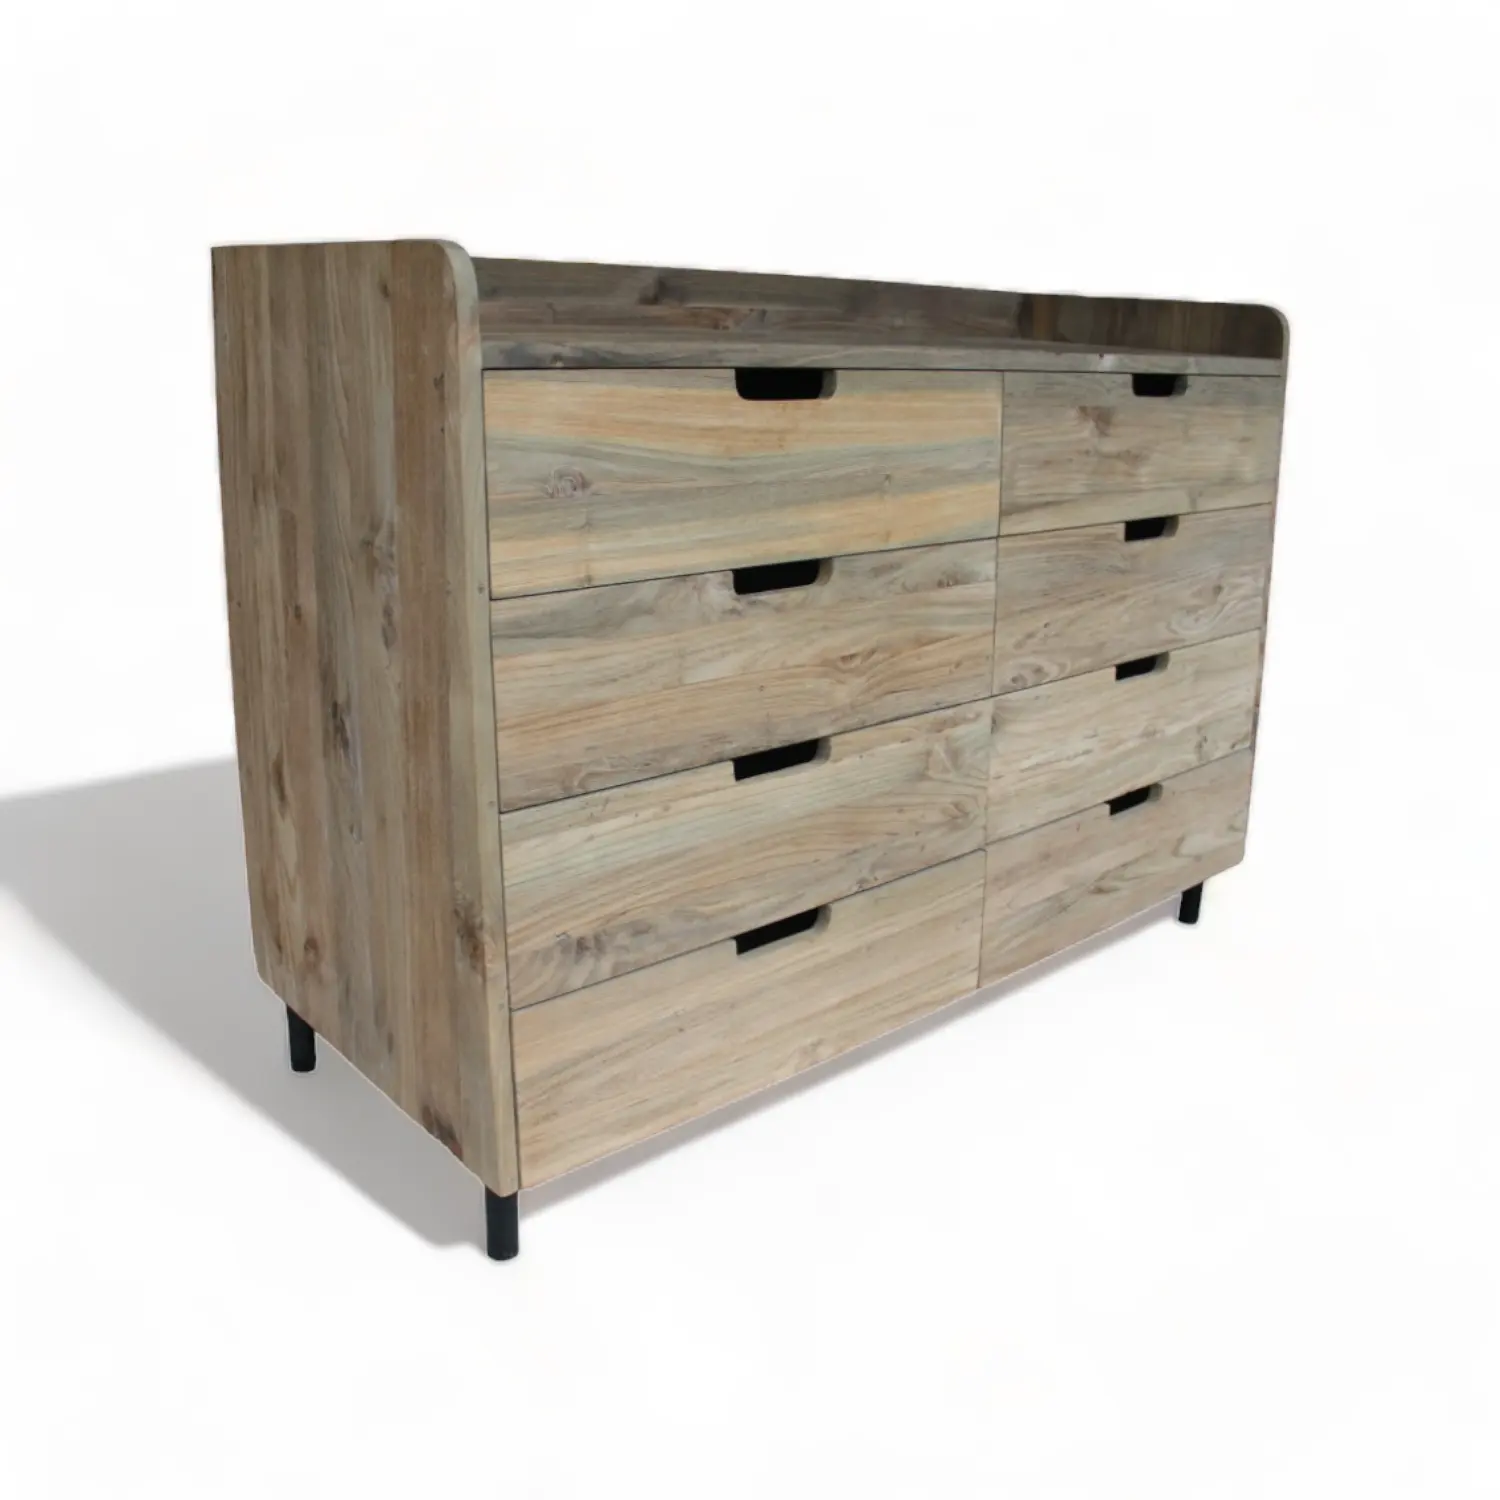 Cómoda de teca de madera de alta calidad, cómoda de 6 cajones en muebles de madera de teca reciclada, cómoda rústica para muebles de dormitorio